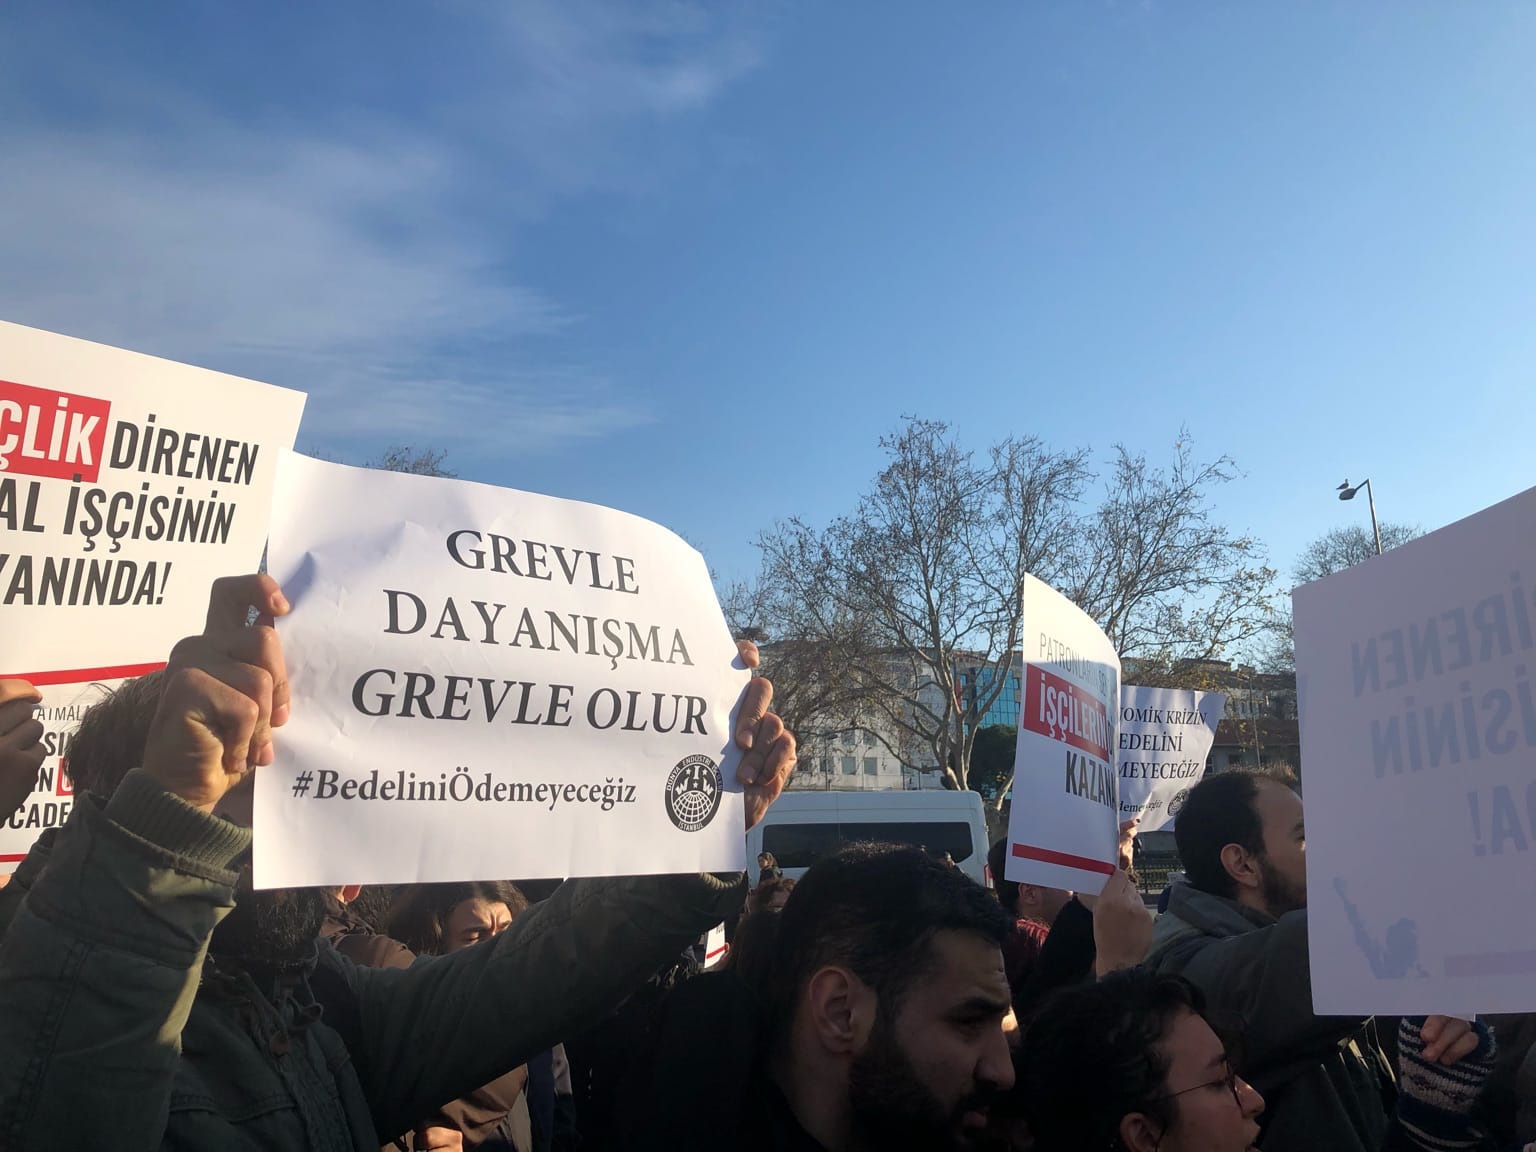 5 Şubat’ta greve çıkacak metal işçileriyle dayanışmak için Kadıköy’de basın açıklaması gerçekleştirildi